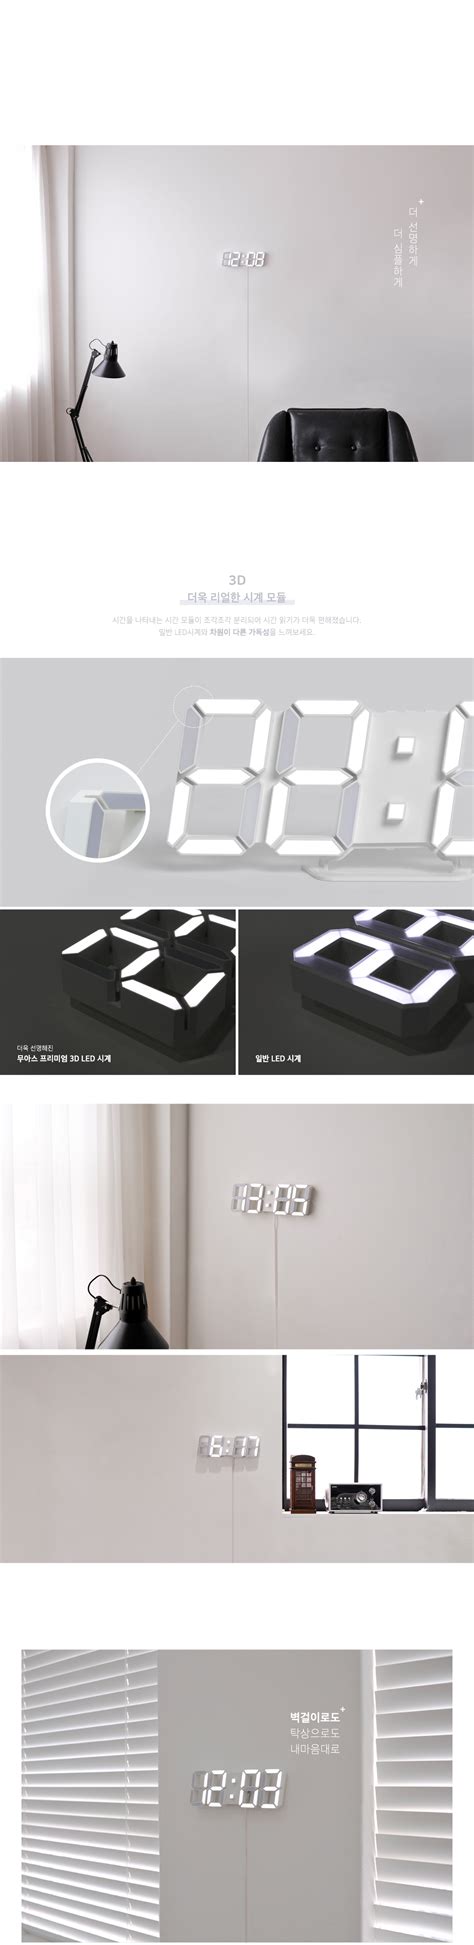 3D-LED-Clock_White_02.jpg